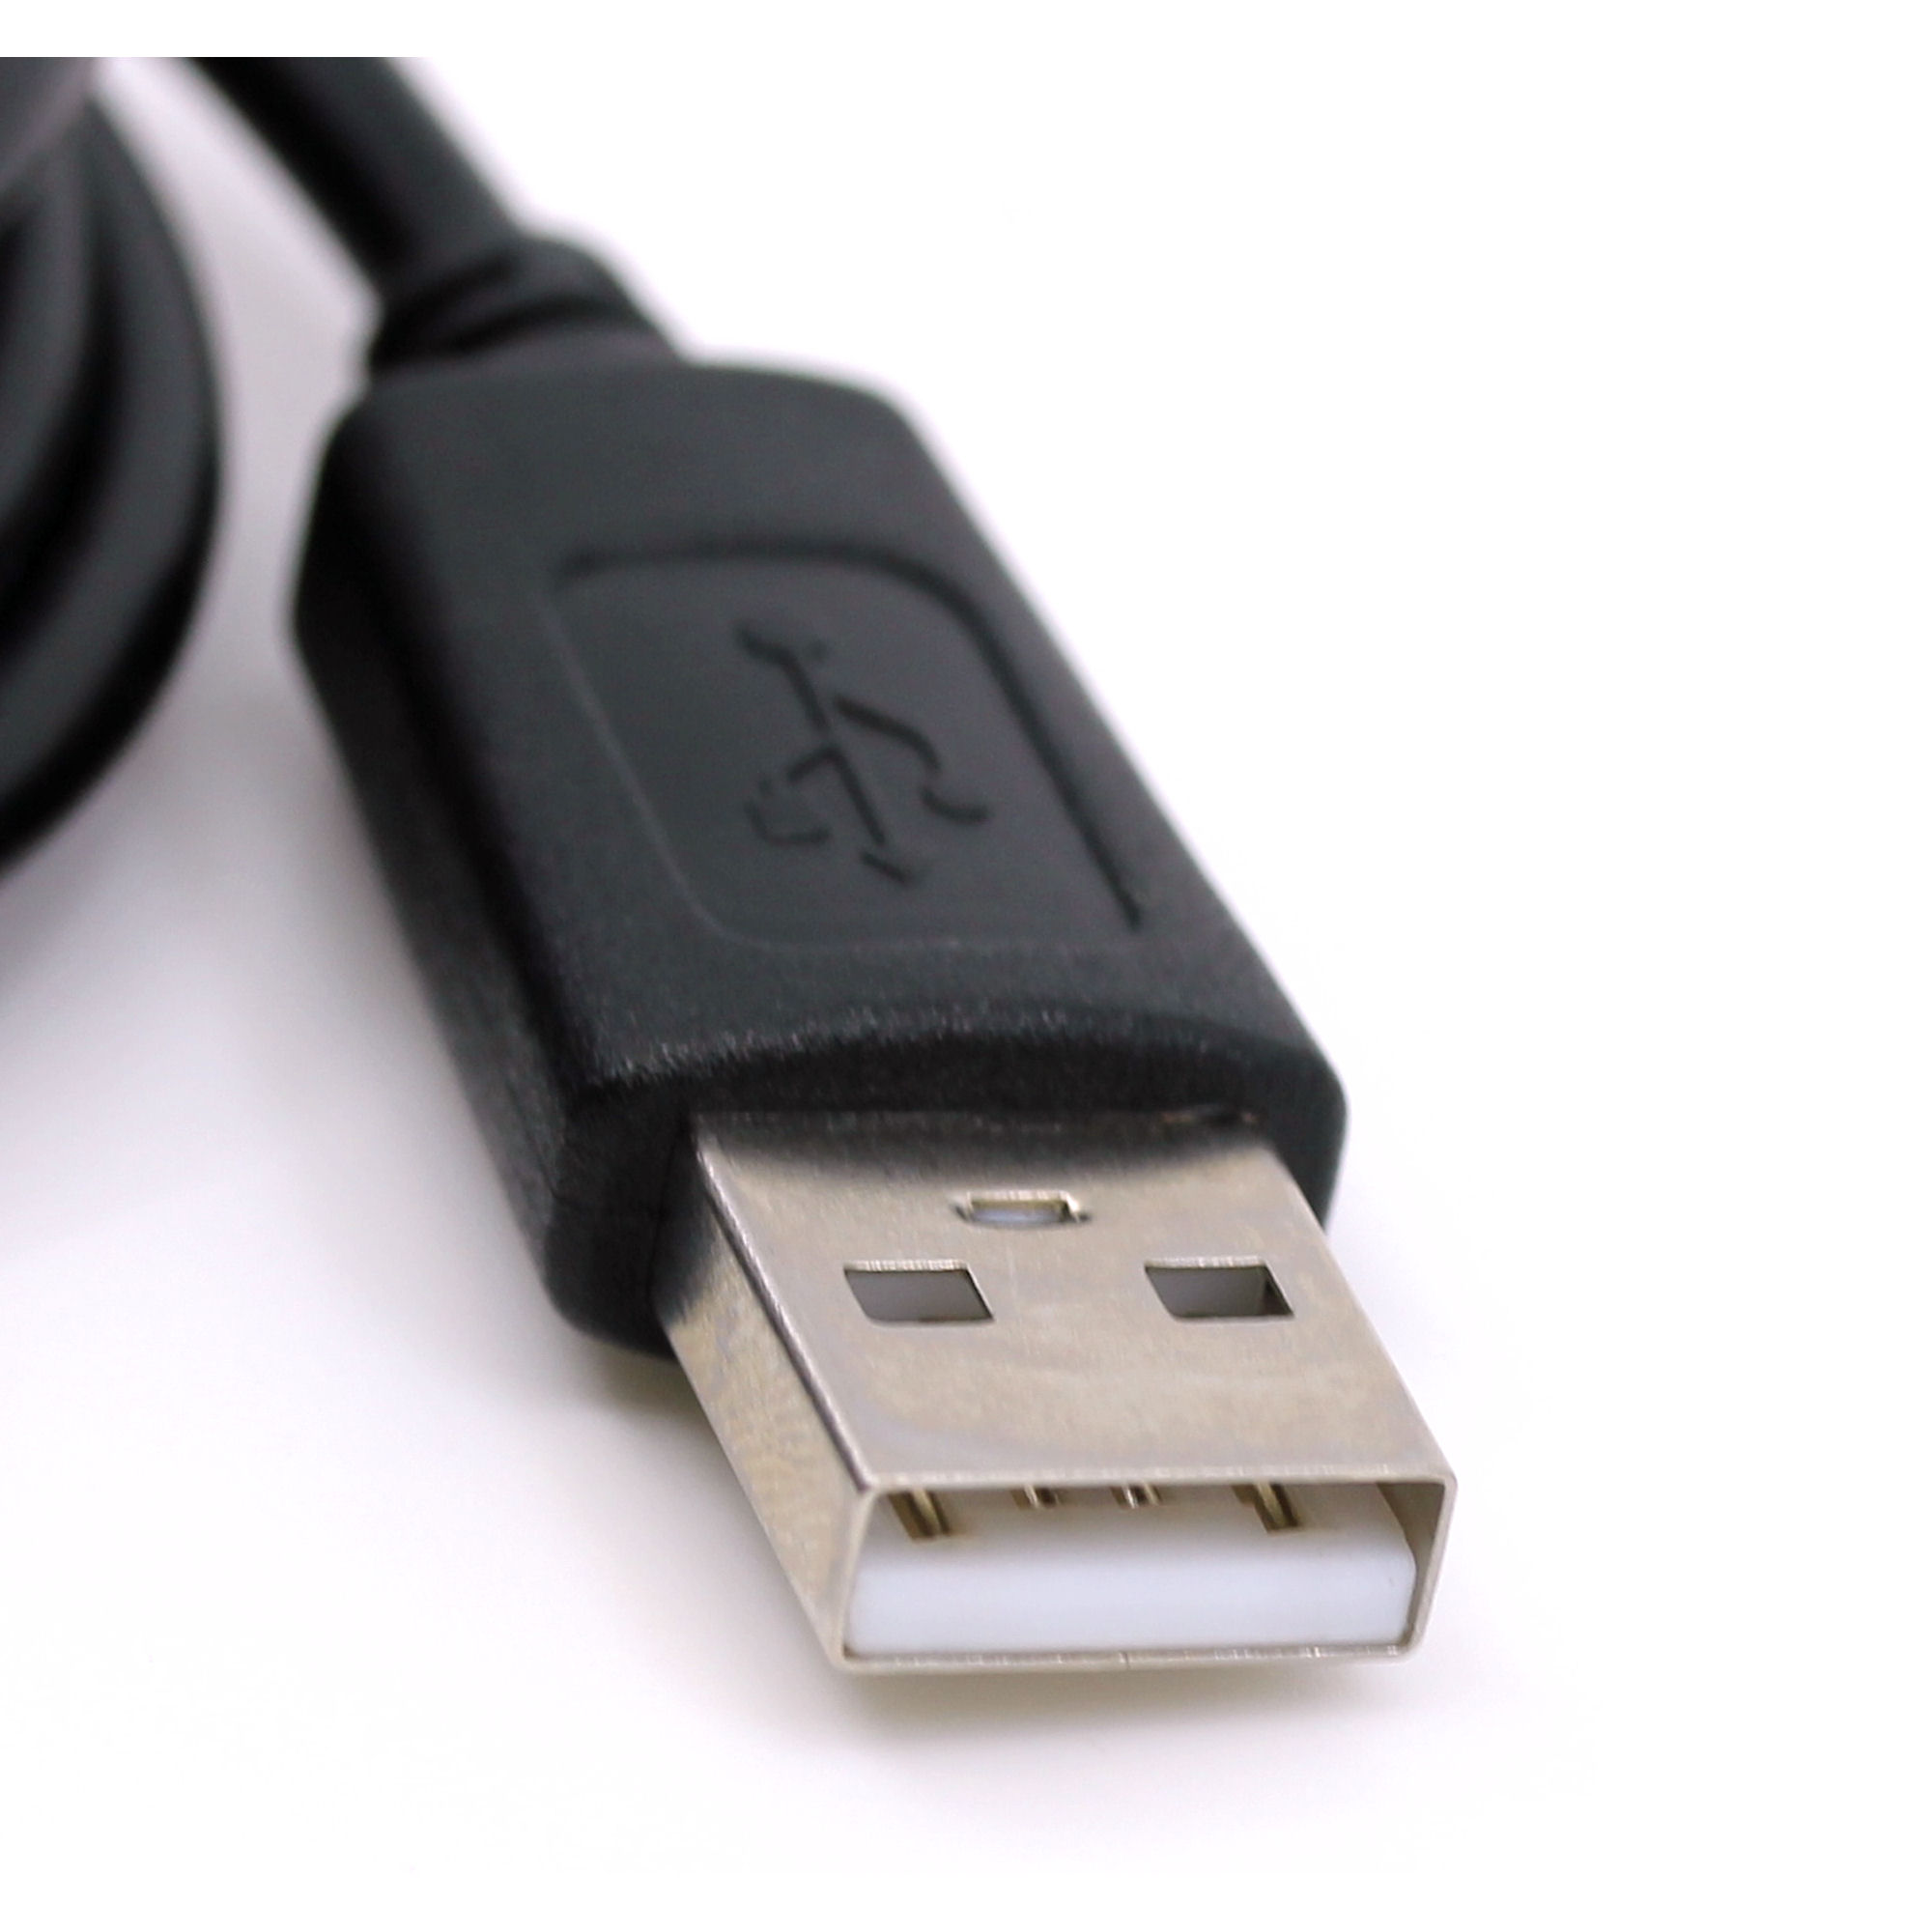 USB Datenkabel für Epson Photo PC 3000Z, Photo PC 3100Z